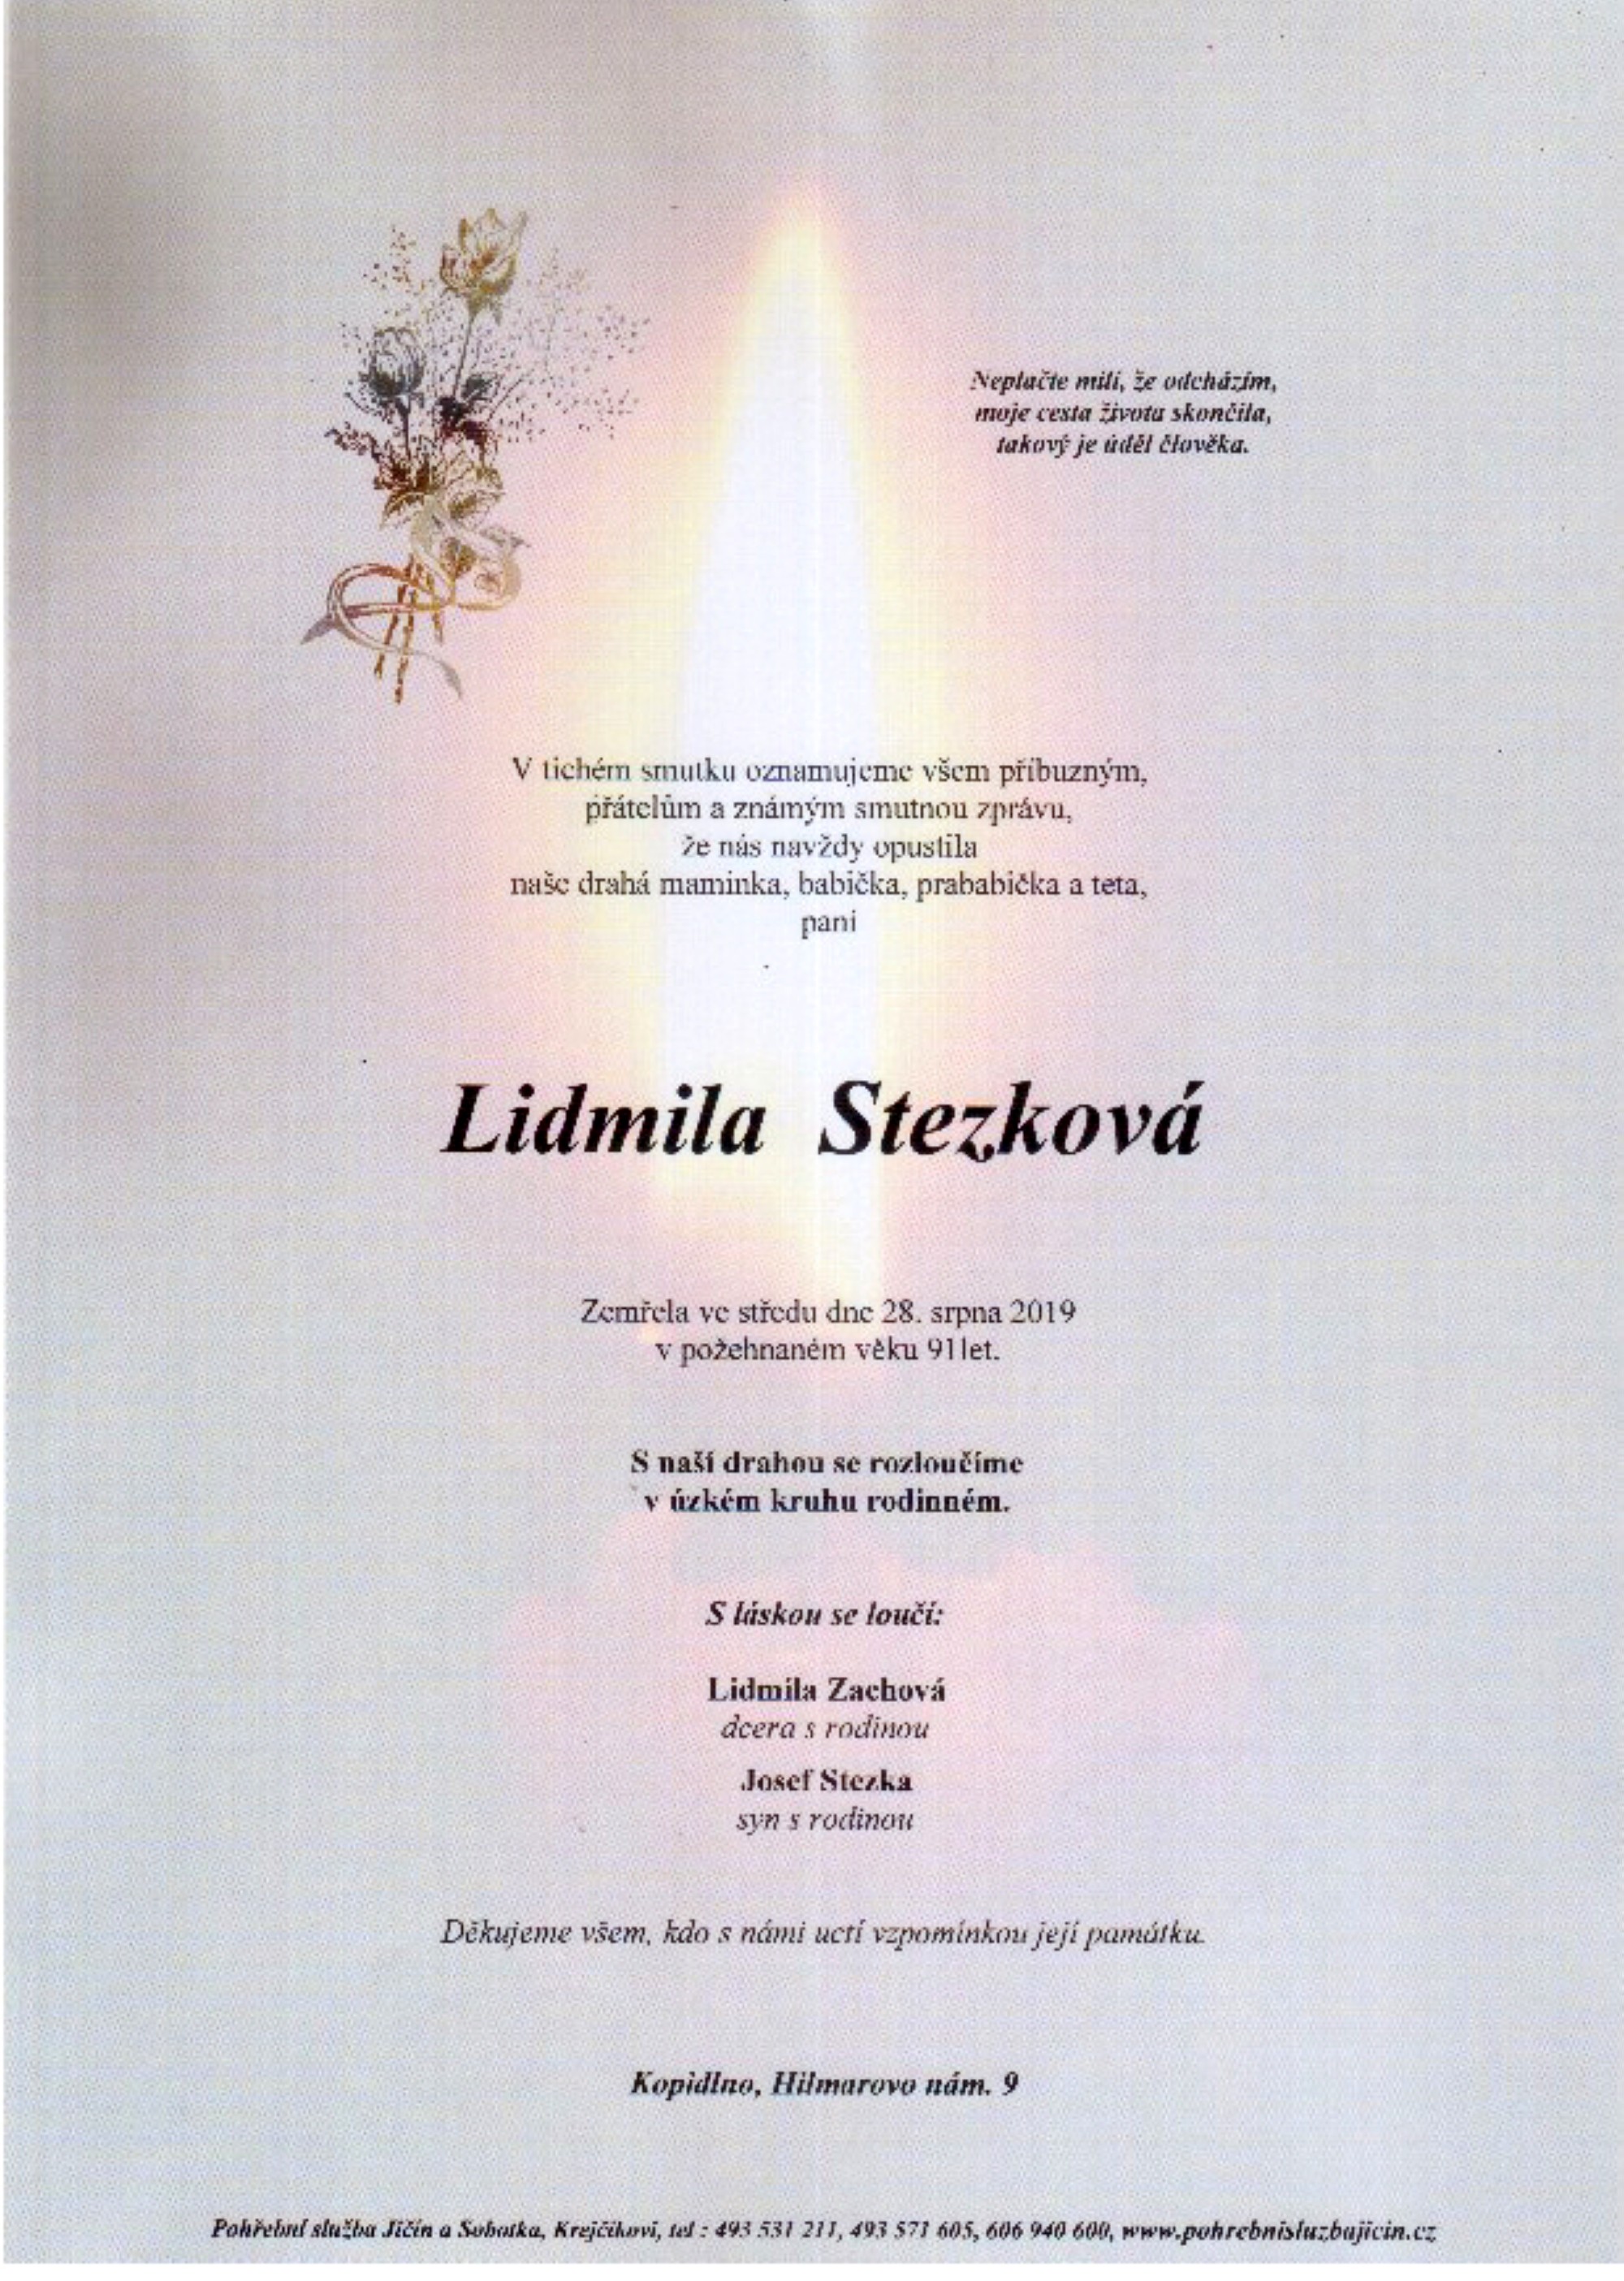 Lidmila Stezková